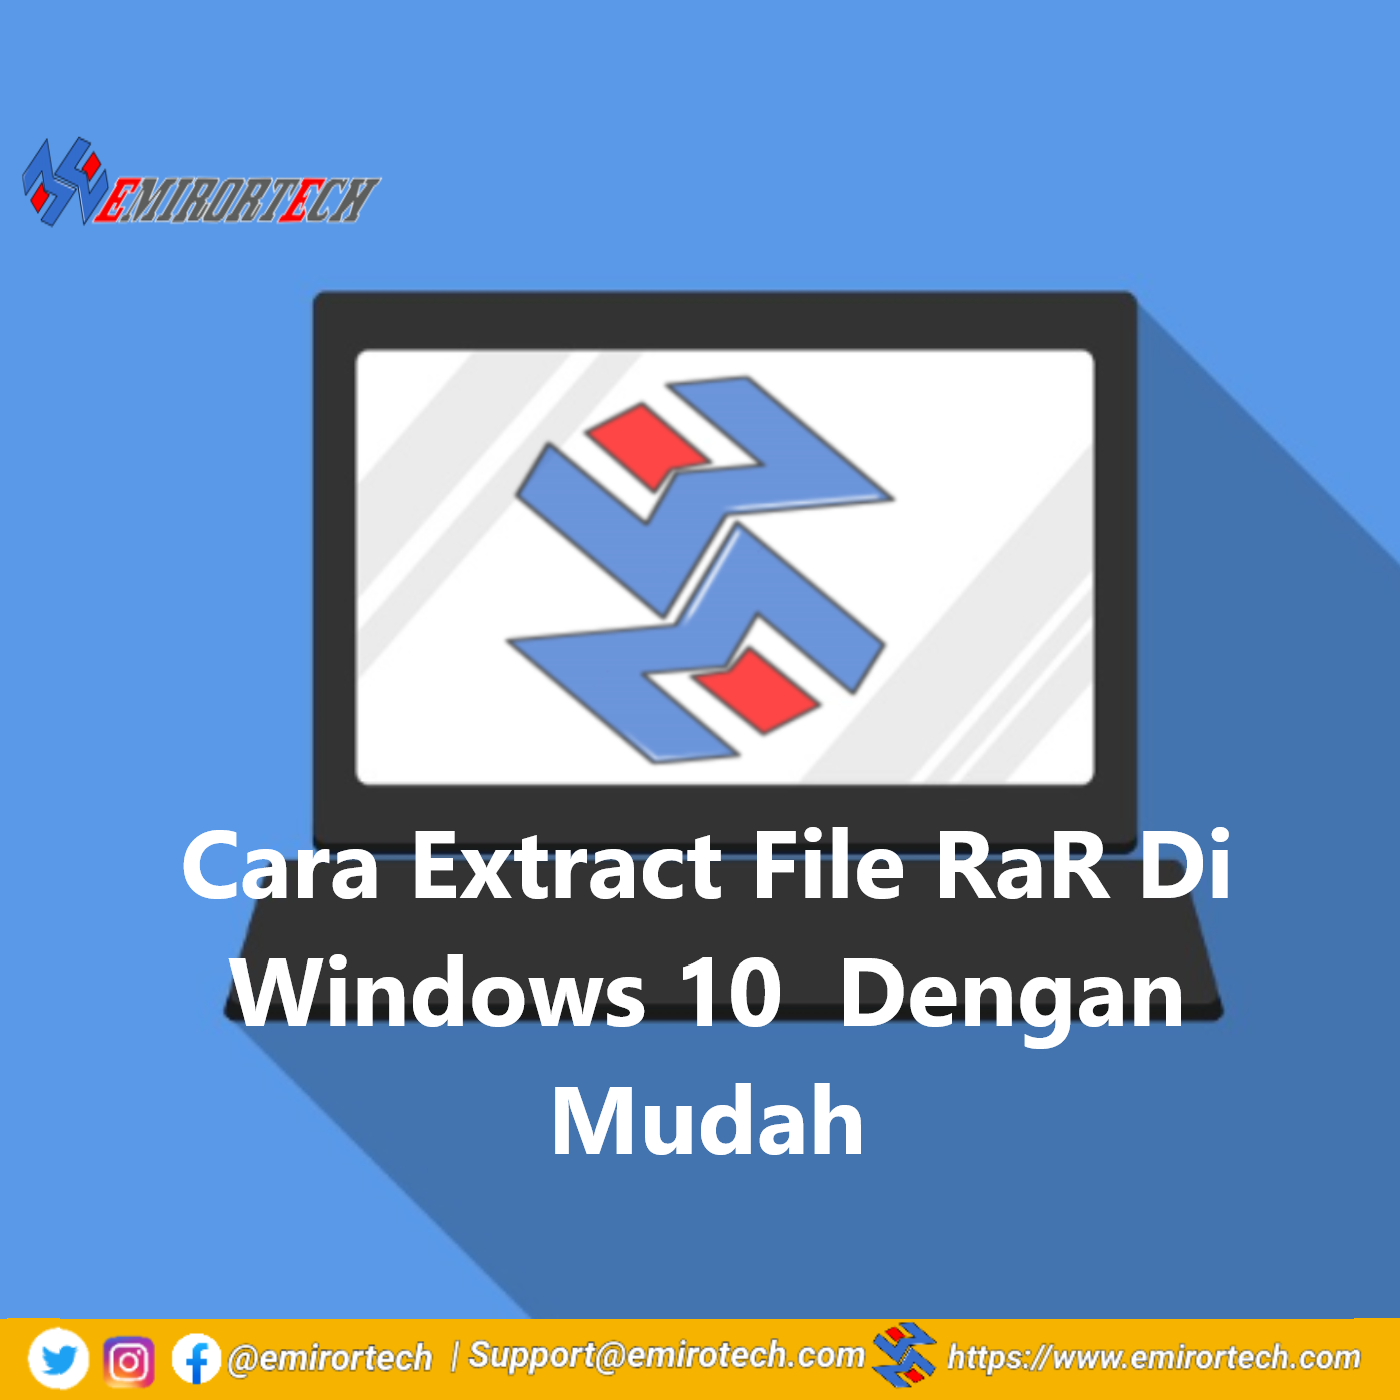 Cara Extract File RaR Di Windows 10 Dengan Mudah